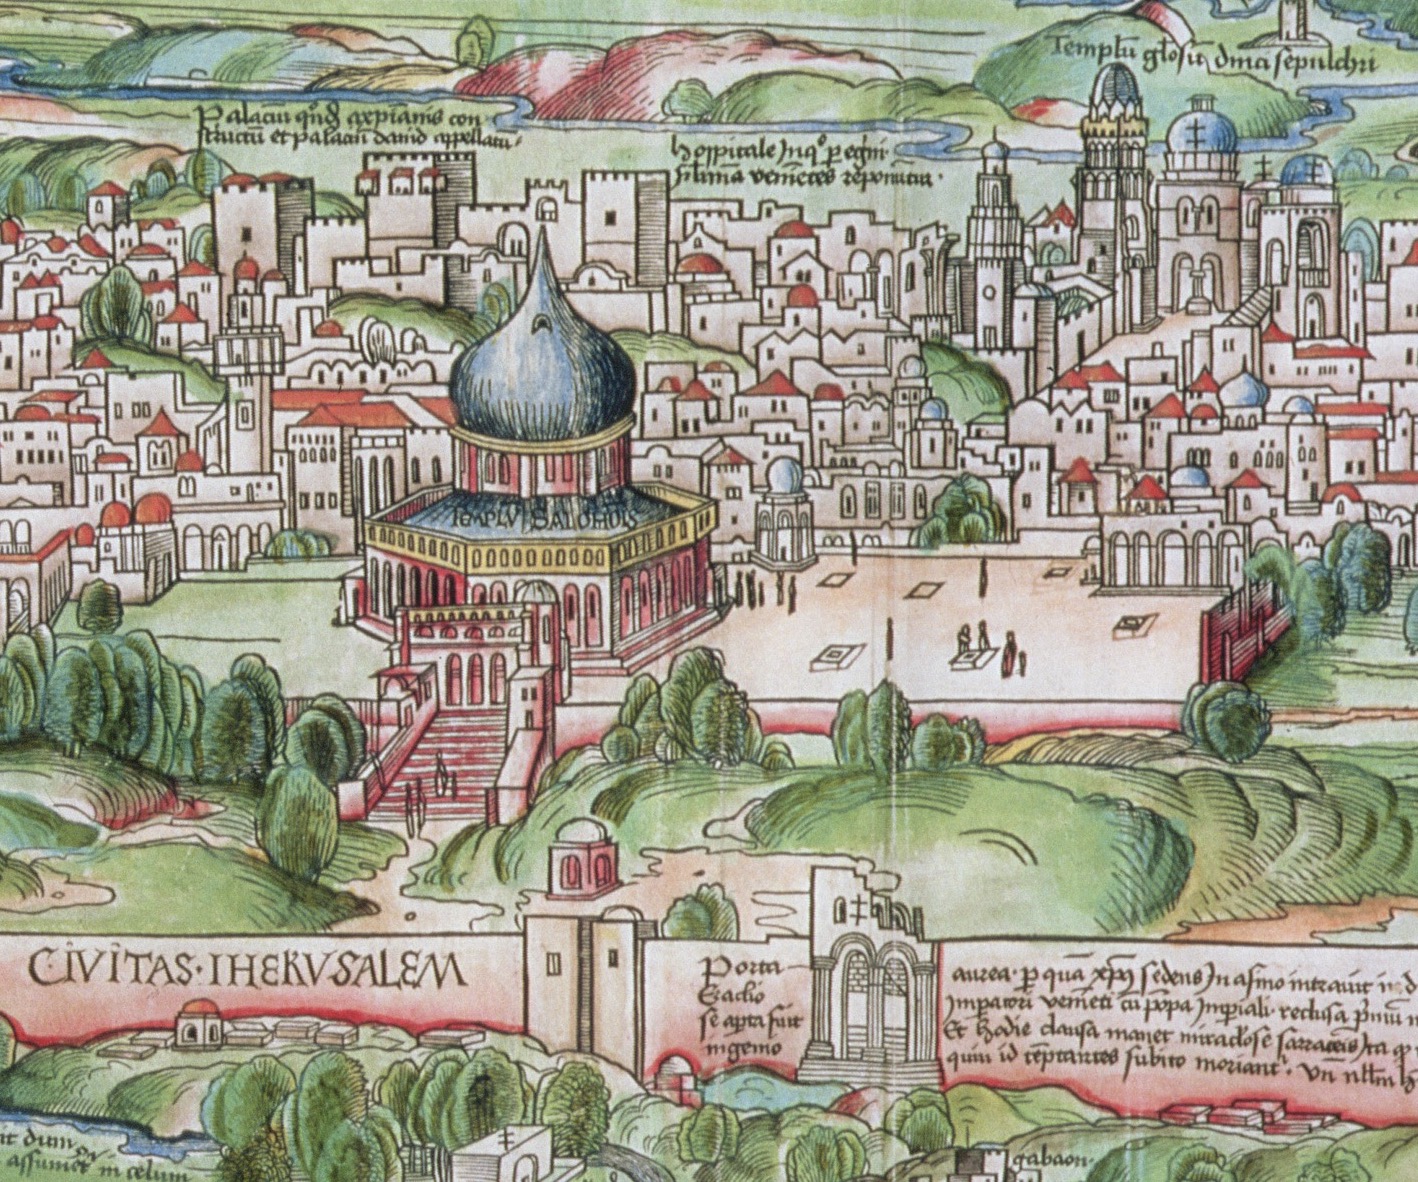 Mapping the senses in El viage de Hierusalem by Francisco Guerrero (Sevilla, 1592)